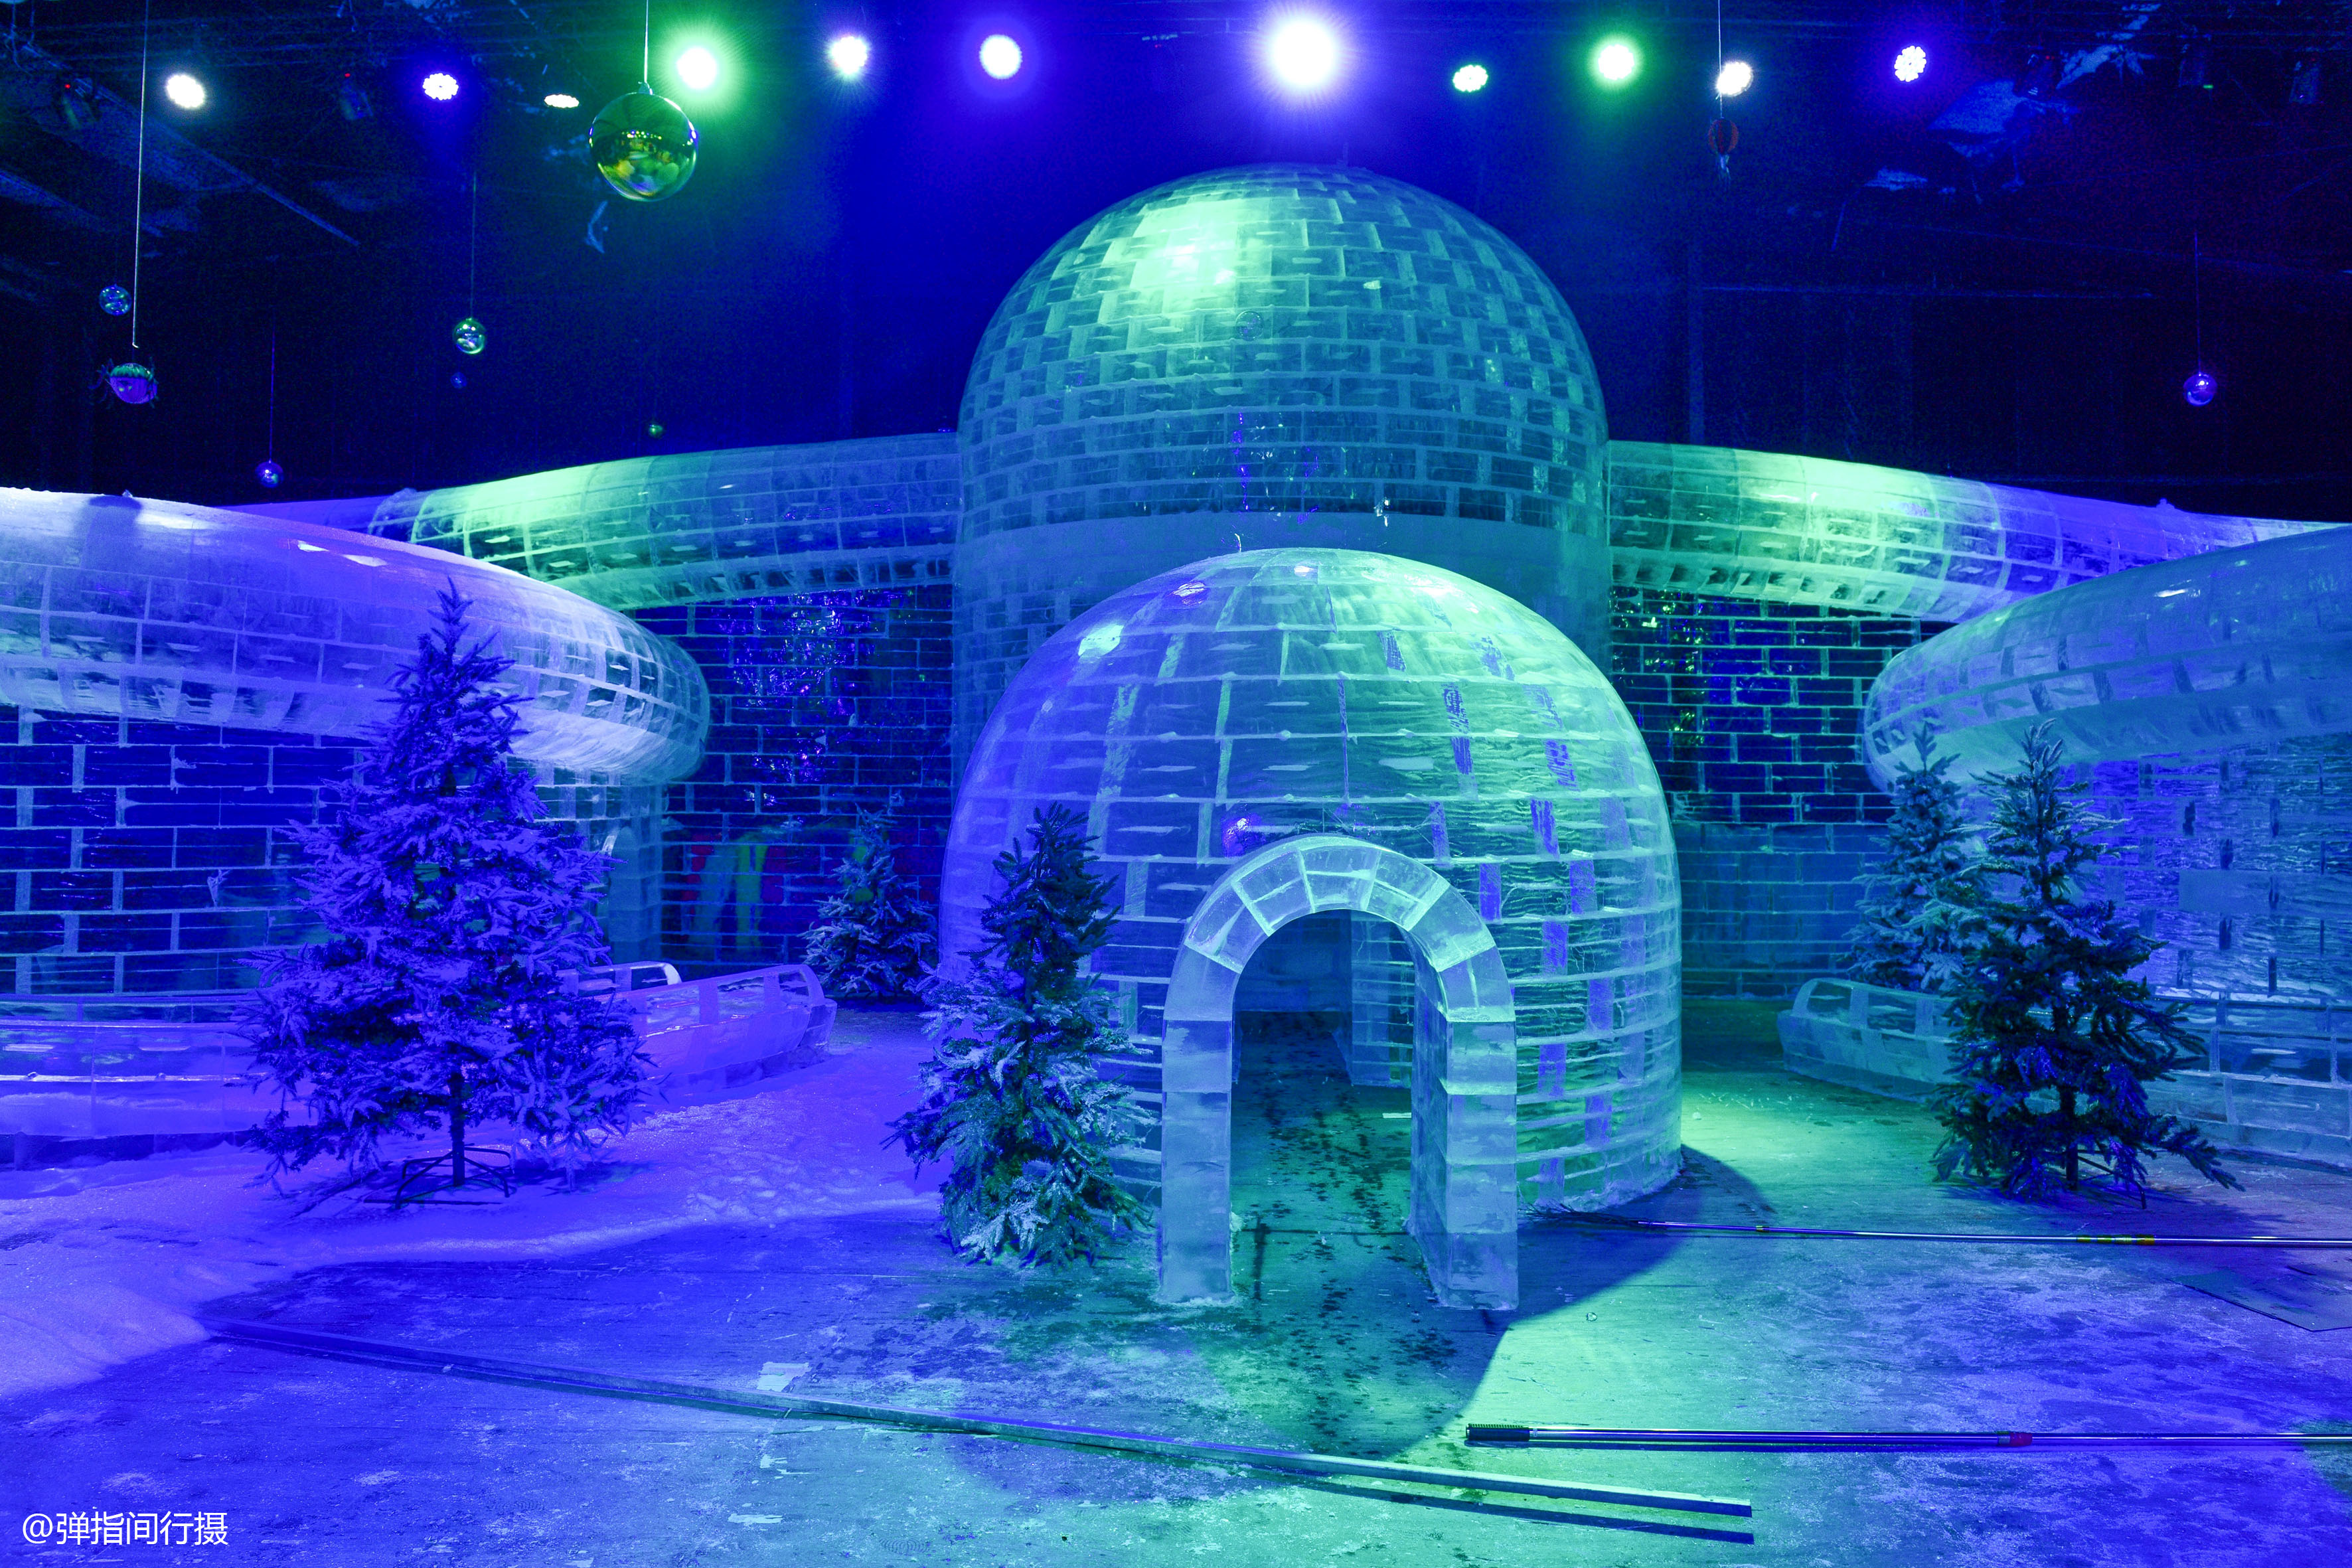 冰雪游乐馆采用纯天然透明冰块,给游客呈现一个国内一流的室内冰雕展